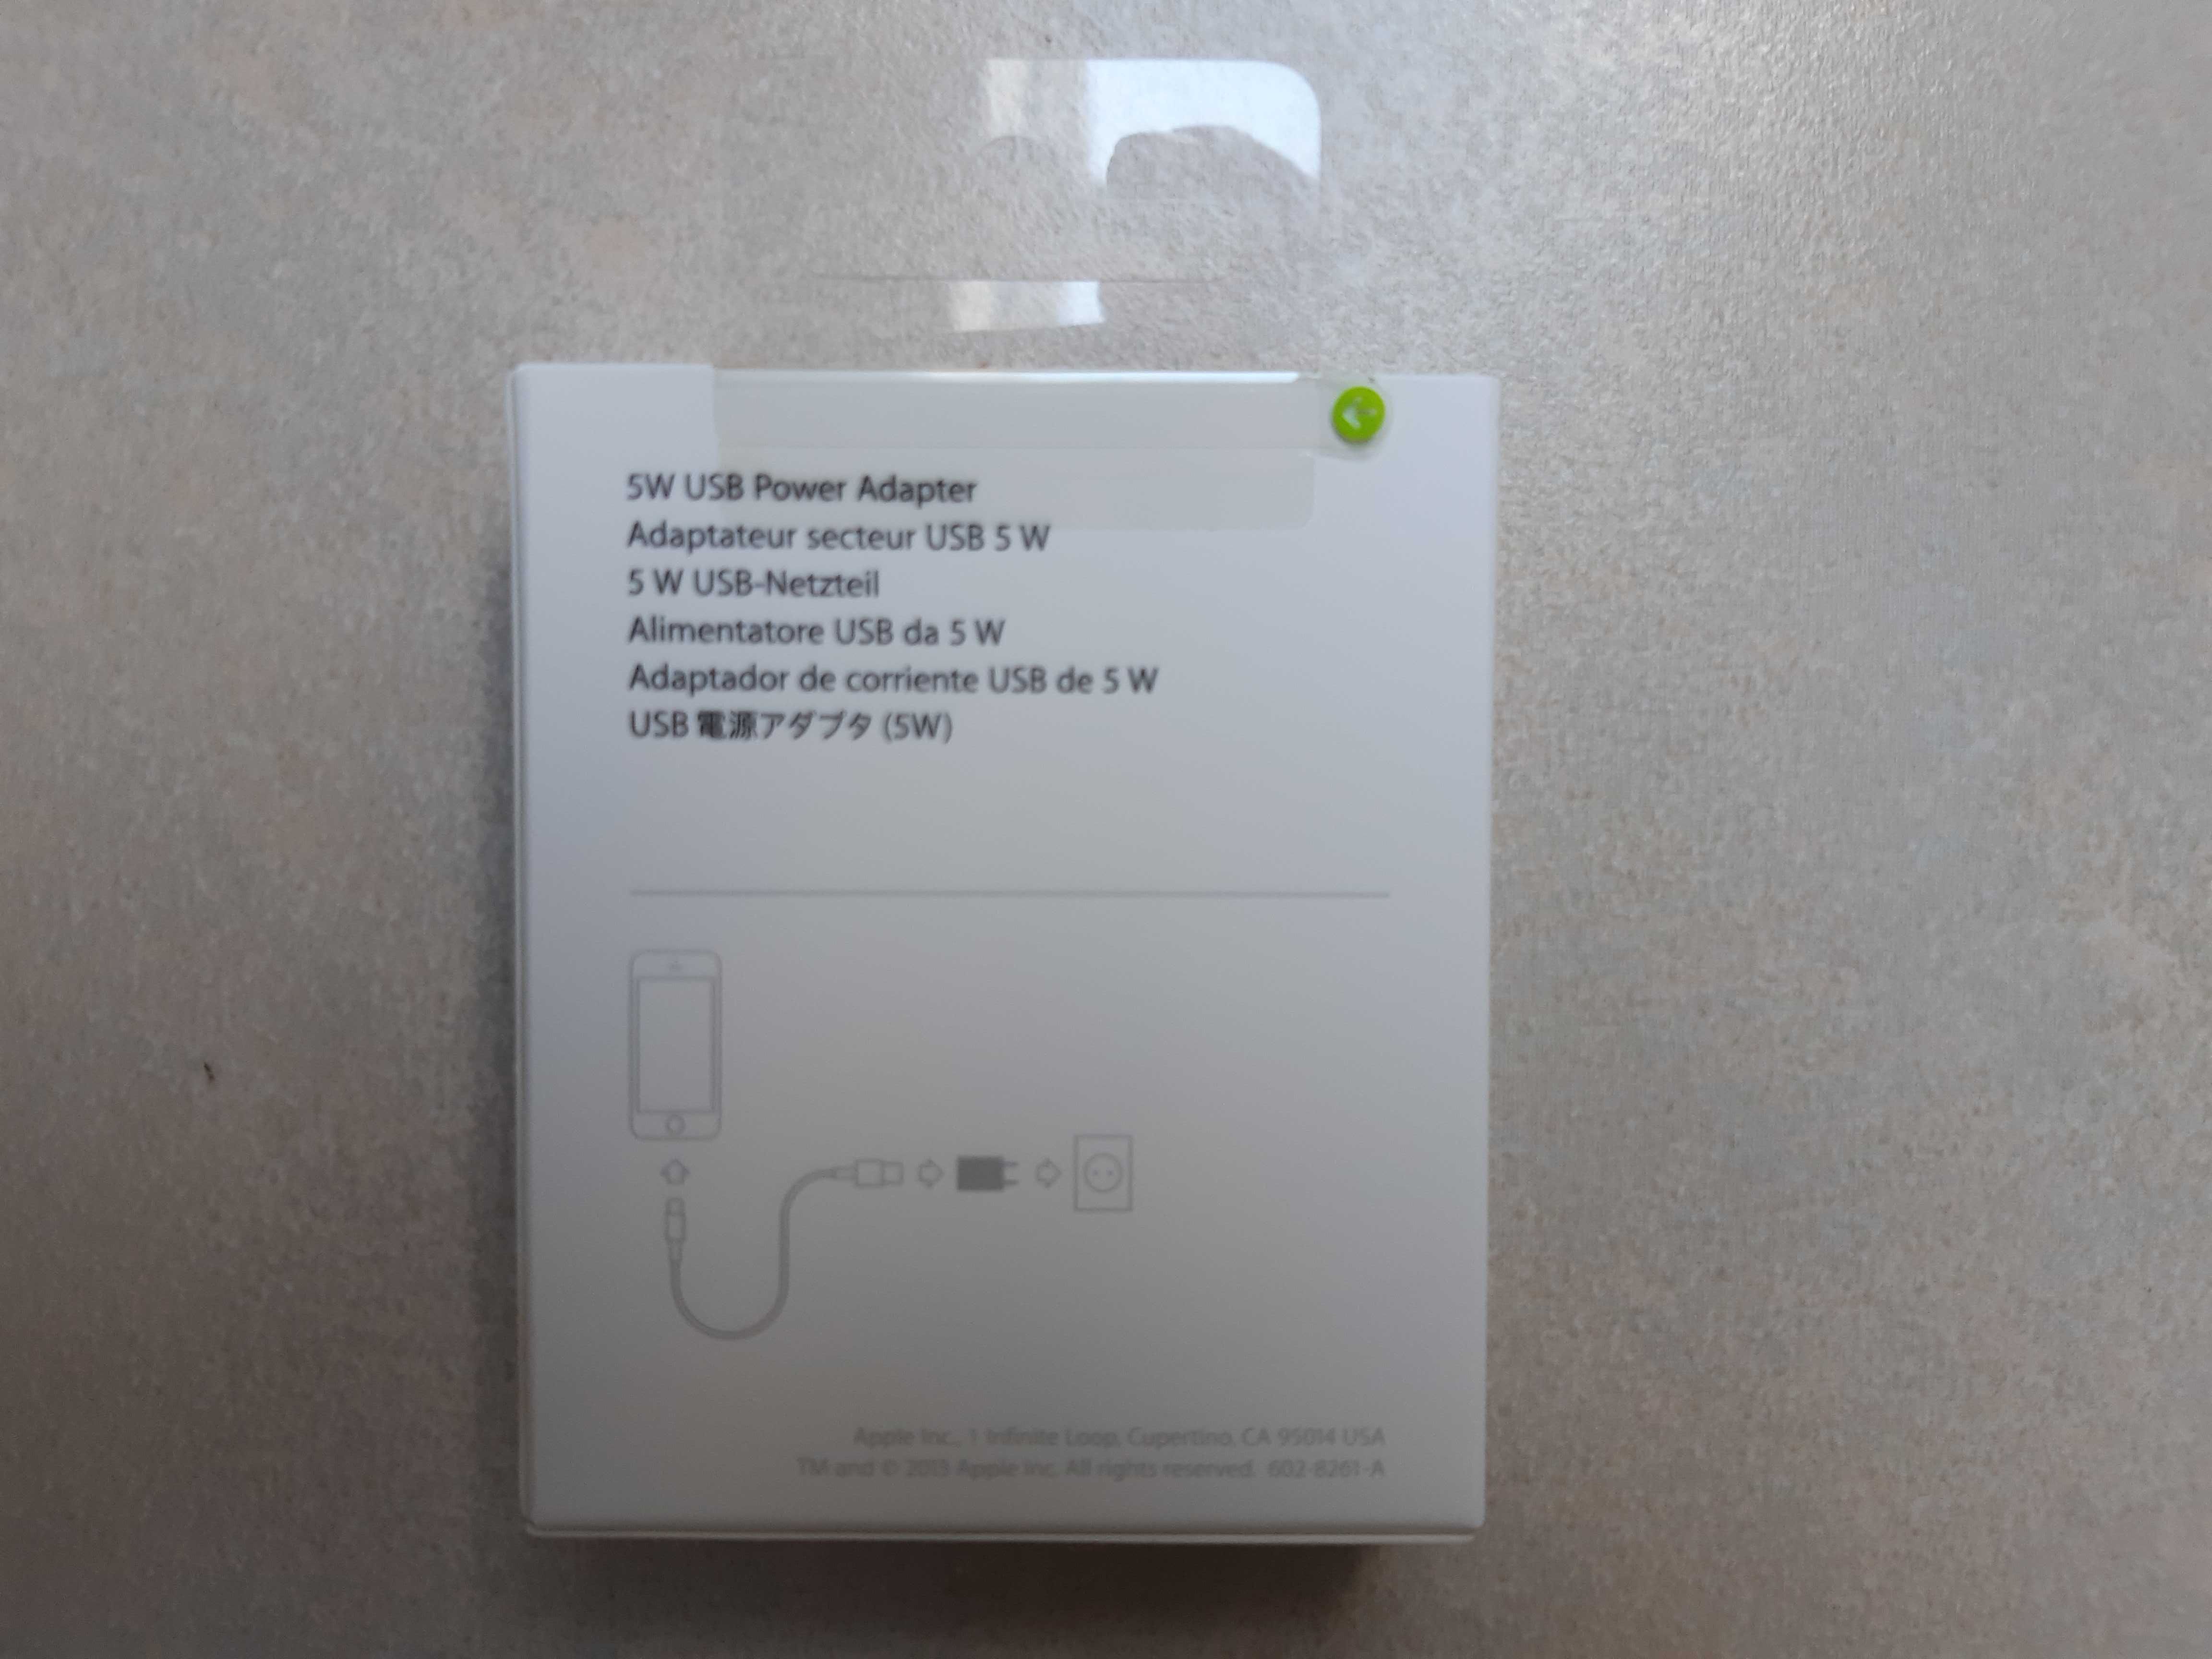 Apple Zasilacz USB o mocy 5W MD813ZM/A Nowy oryginalny kupion iSpot.pl